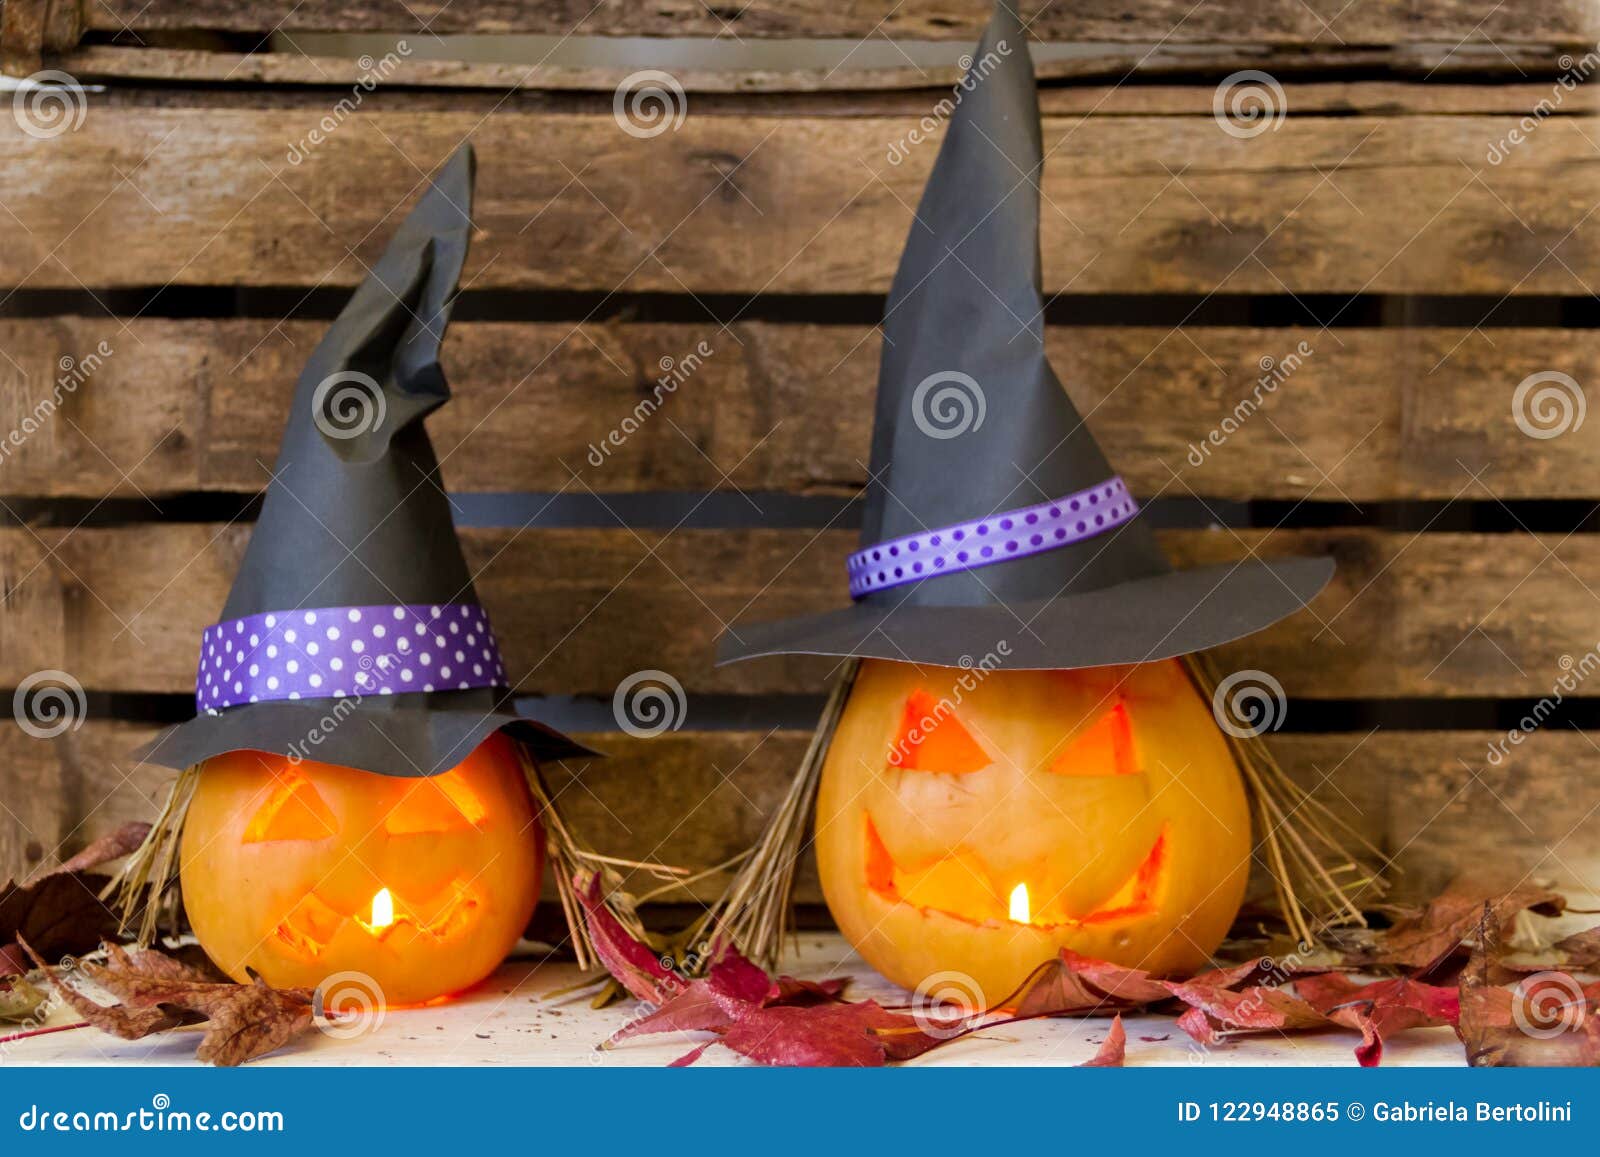 Bruxas - Halloween - Original e Divertido